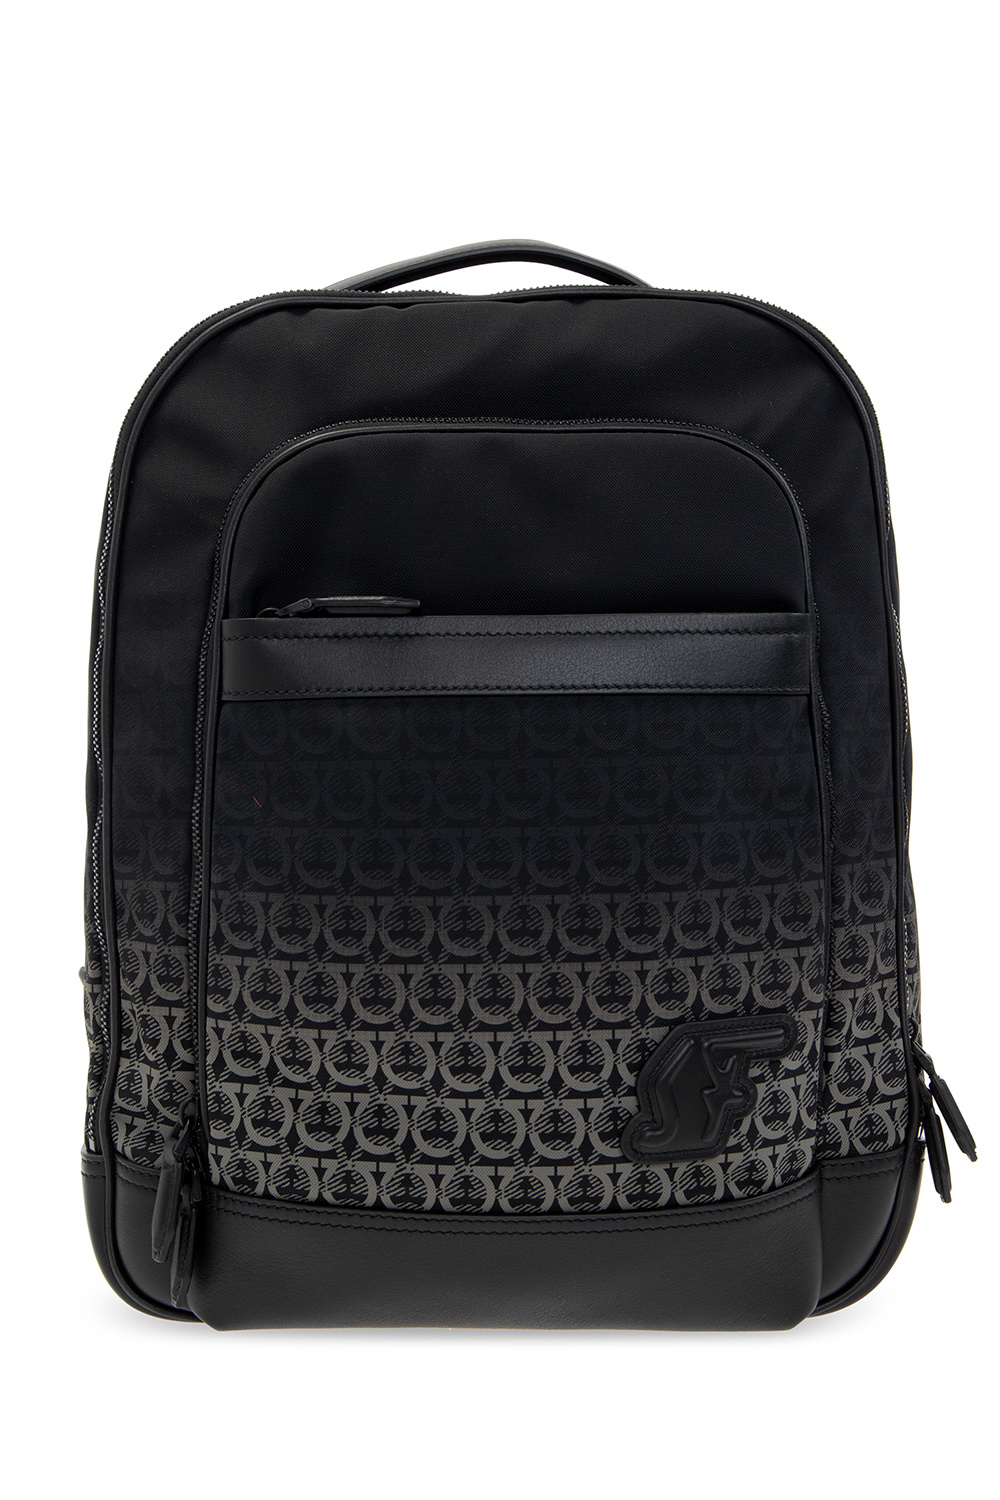 Salvatore Ferragamo ‘Nylon SF’ backpack with logo